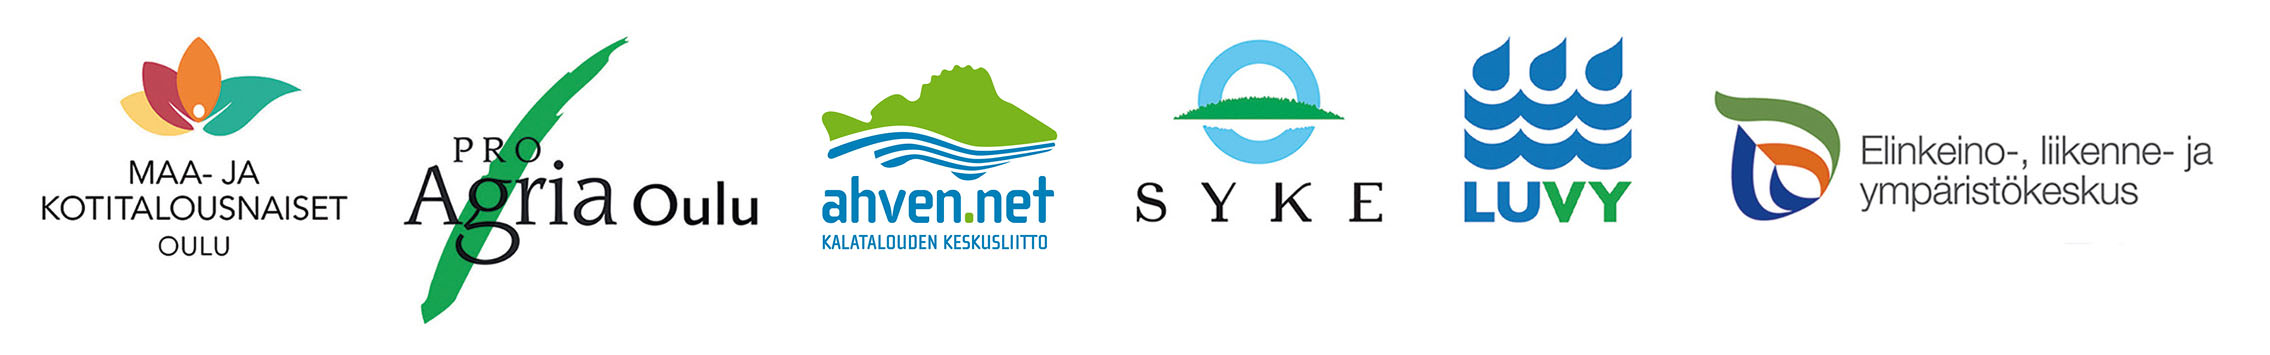 Järjestäjäorganisaatioiden logot hankkeelle Verkostoilla tehoa vesienhoitoon: Maa- ja kotitalousnaiset Oulu, ProAgria Oulu, Kalatalouden keskusliitto Ahven.net, SYKE, LUVY, ELY